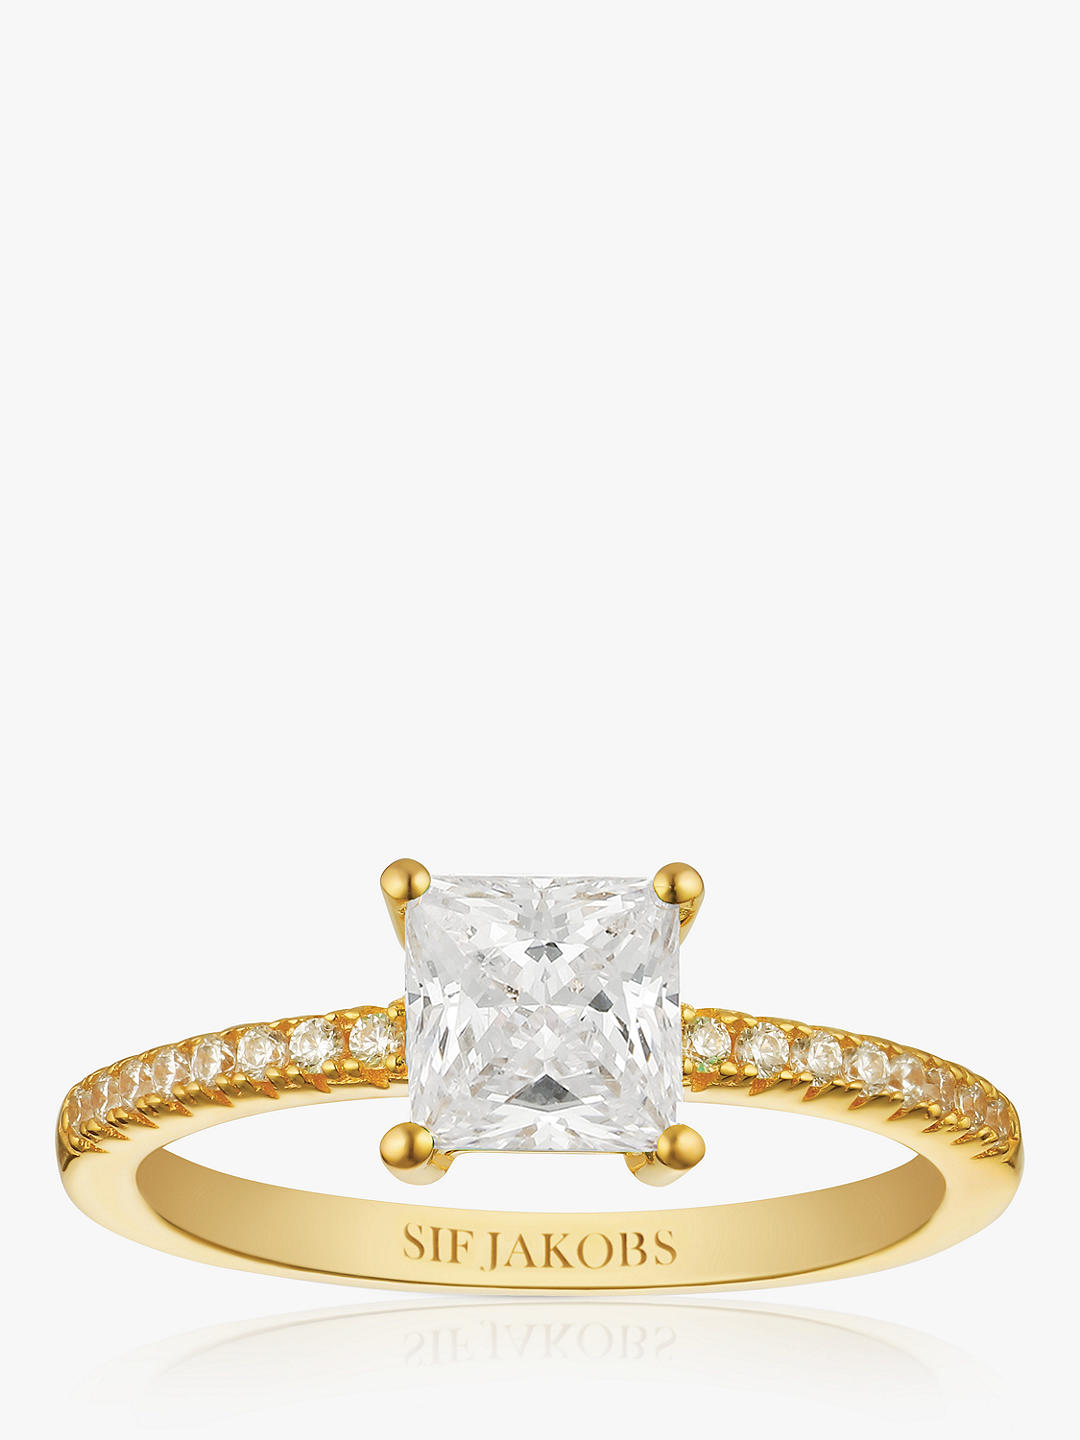 Sif Jakobs Jewellery Ellera Quadrato Princess Cut Cubic Zirconia Ring, Gold